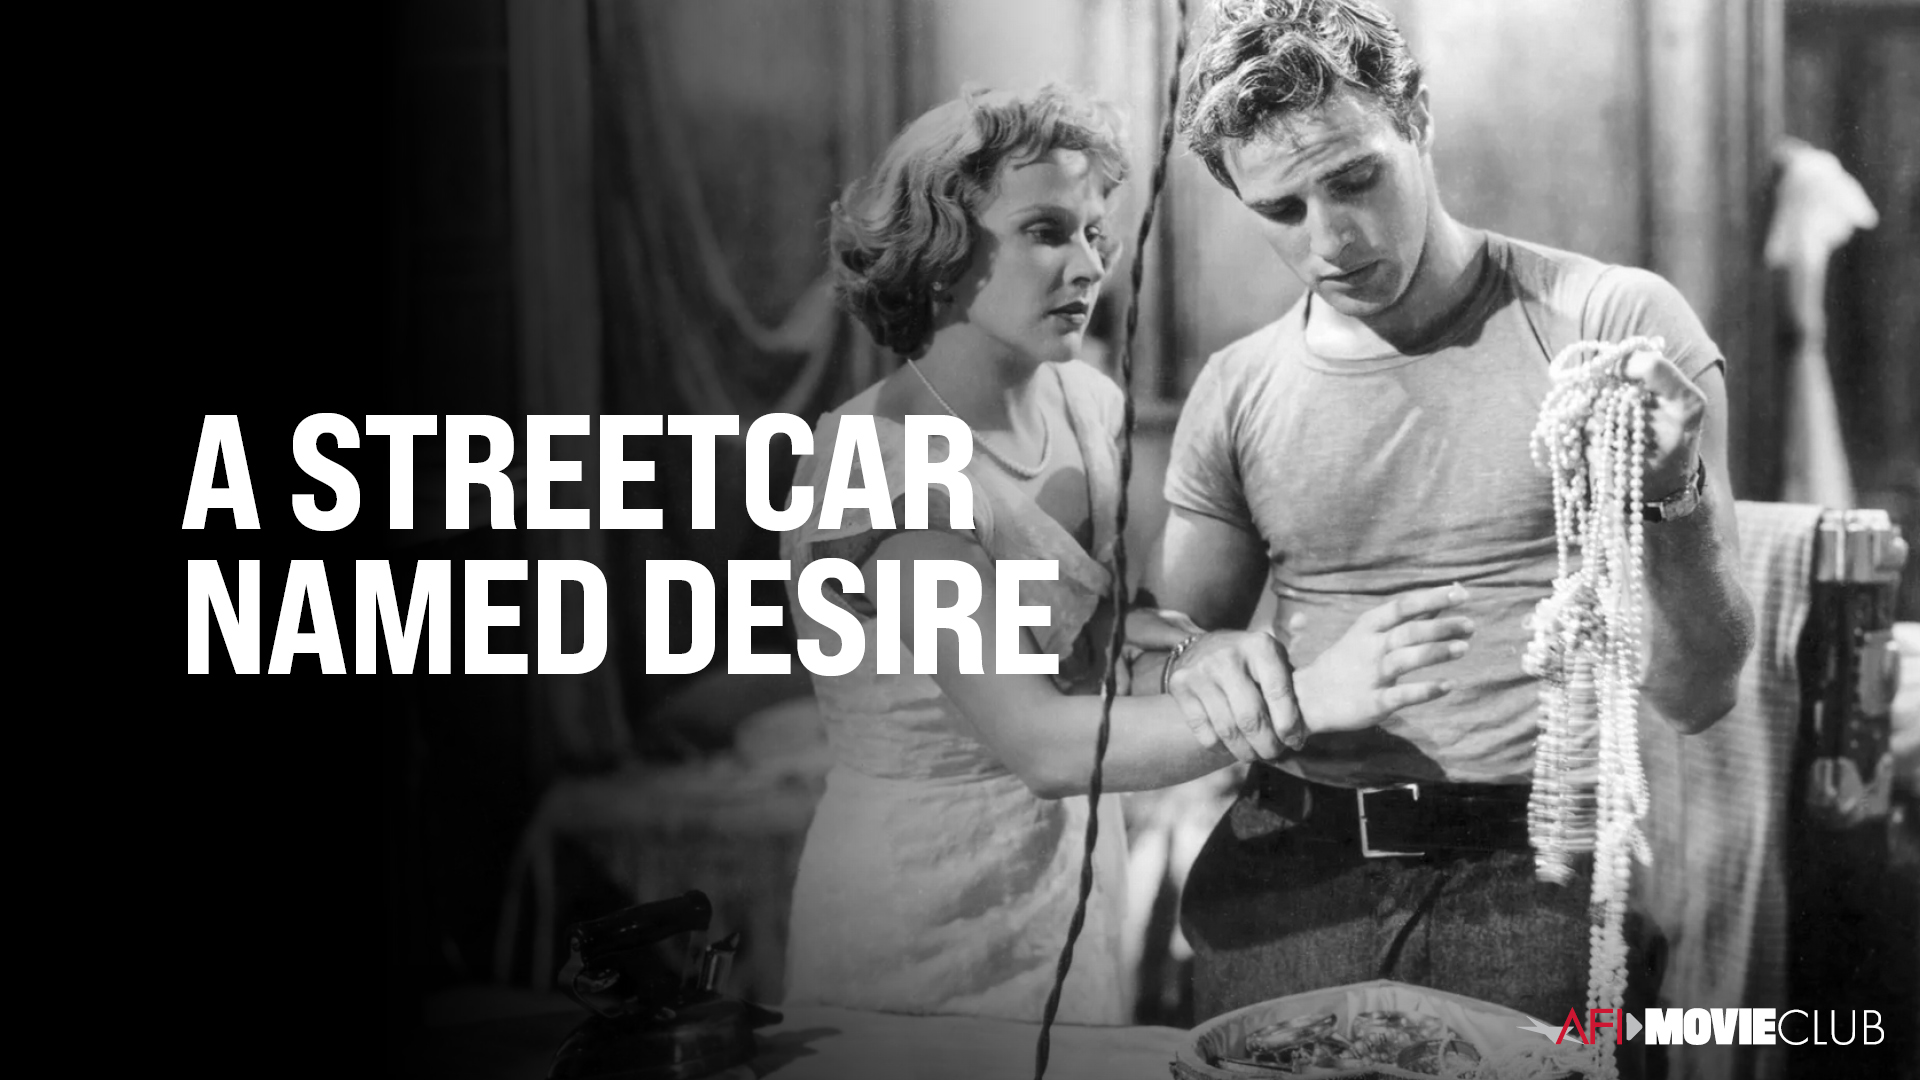 A Street Car Named Desire Film Still - Marlon Brando and Kim Hunter